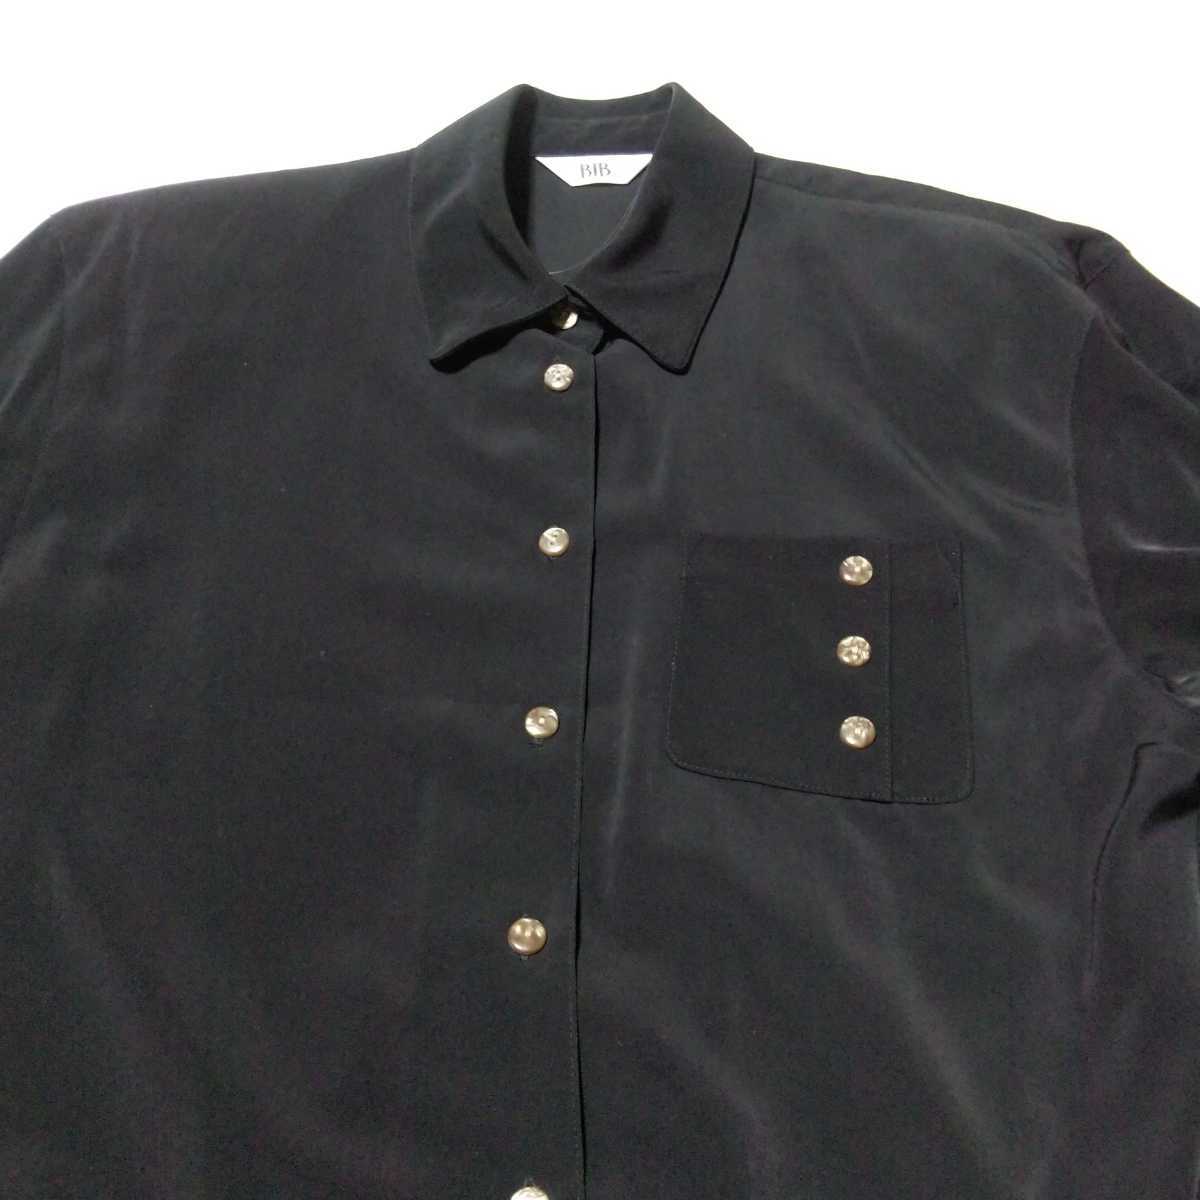 新品未使用品 BIB ビブ ボタン使いの素敵なブラックシャツ/ブラウス  Fサイズ 長袖シャツ 黒シャツ フォーマル オフィス 艶 光沢 黒の画像5